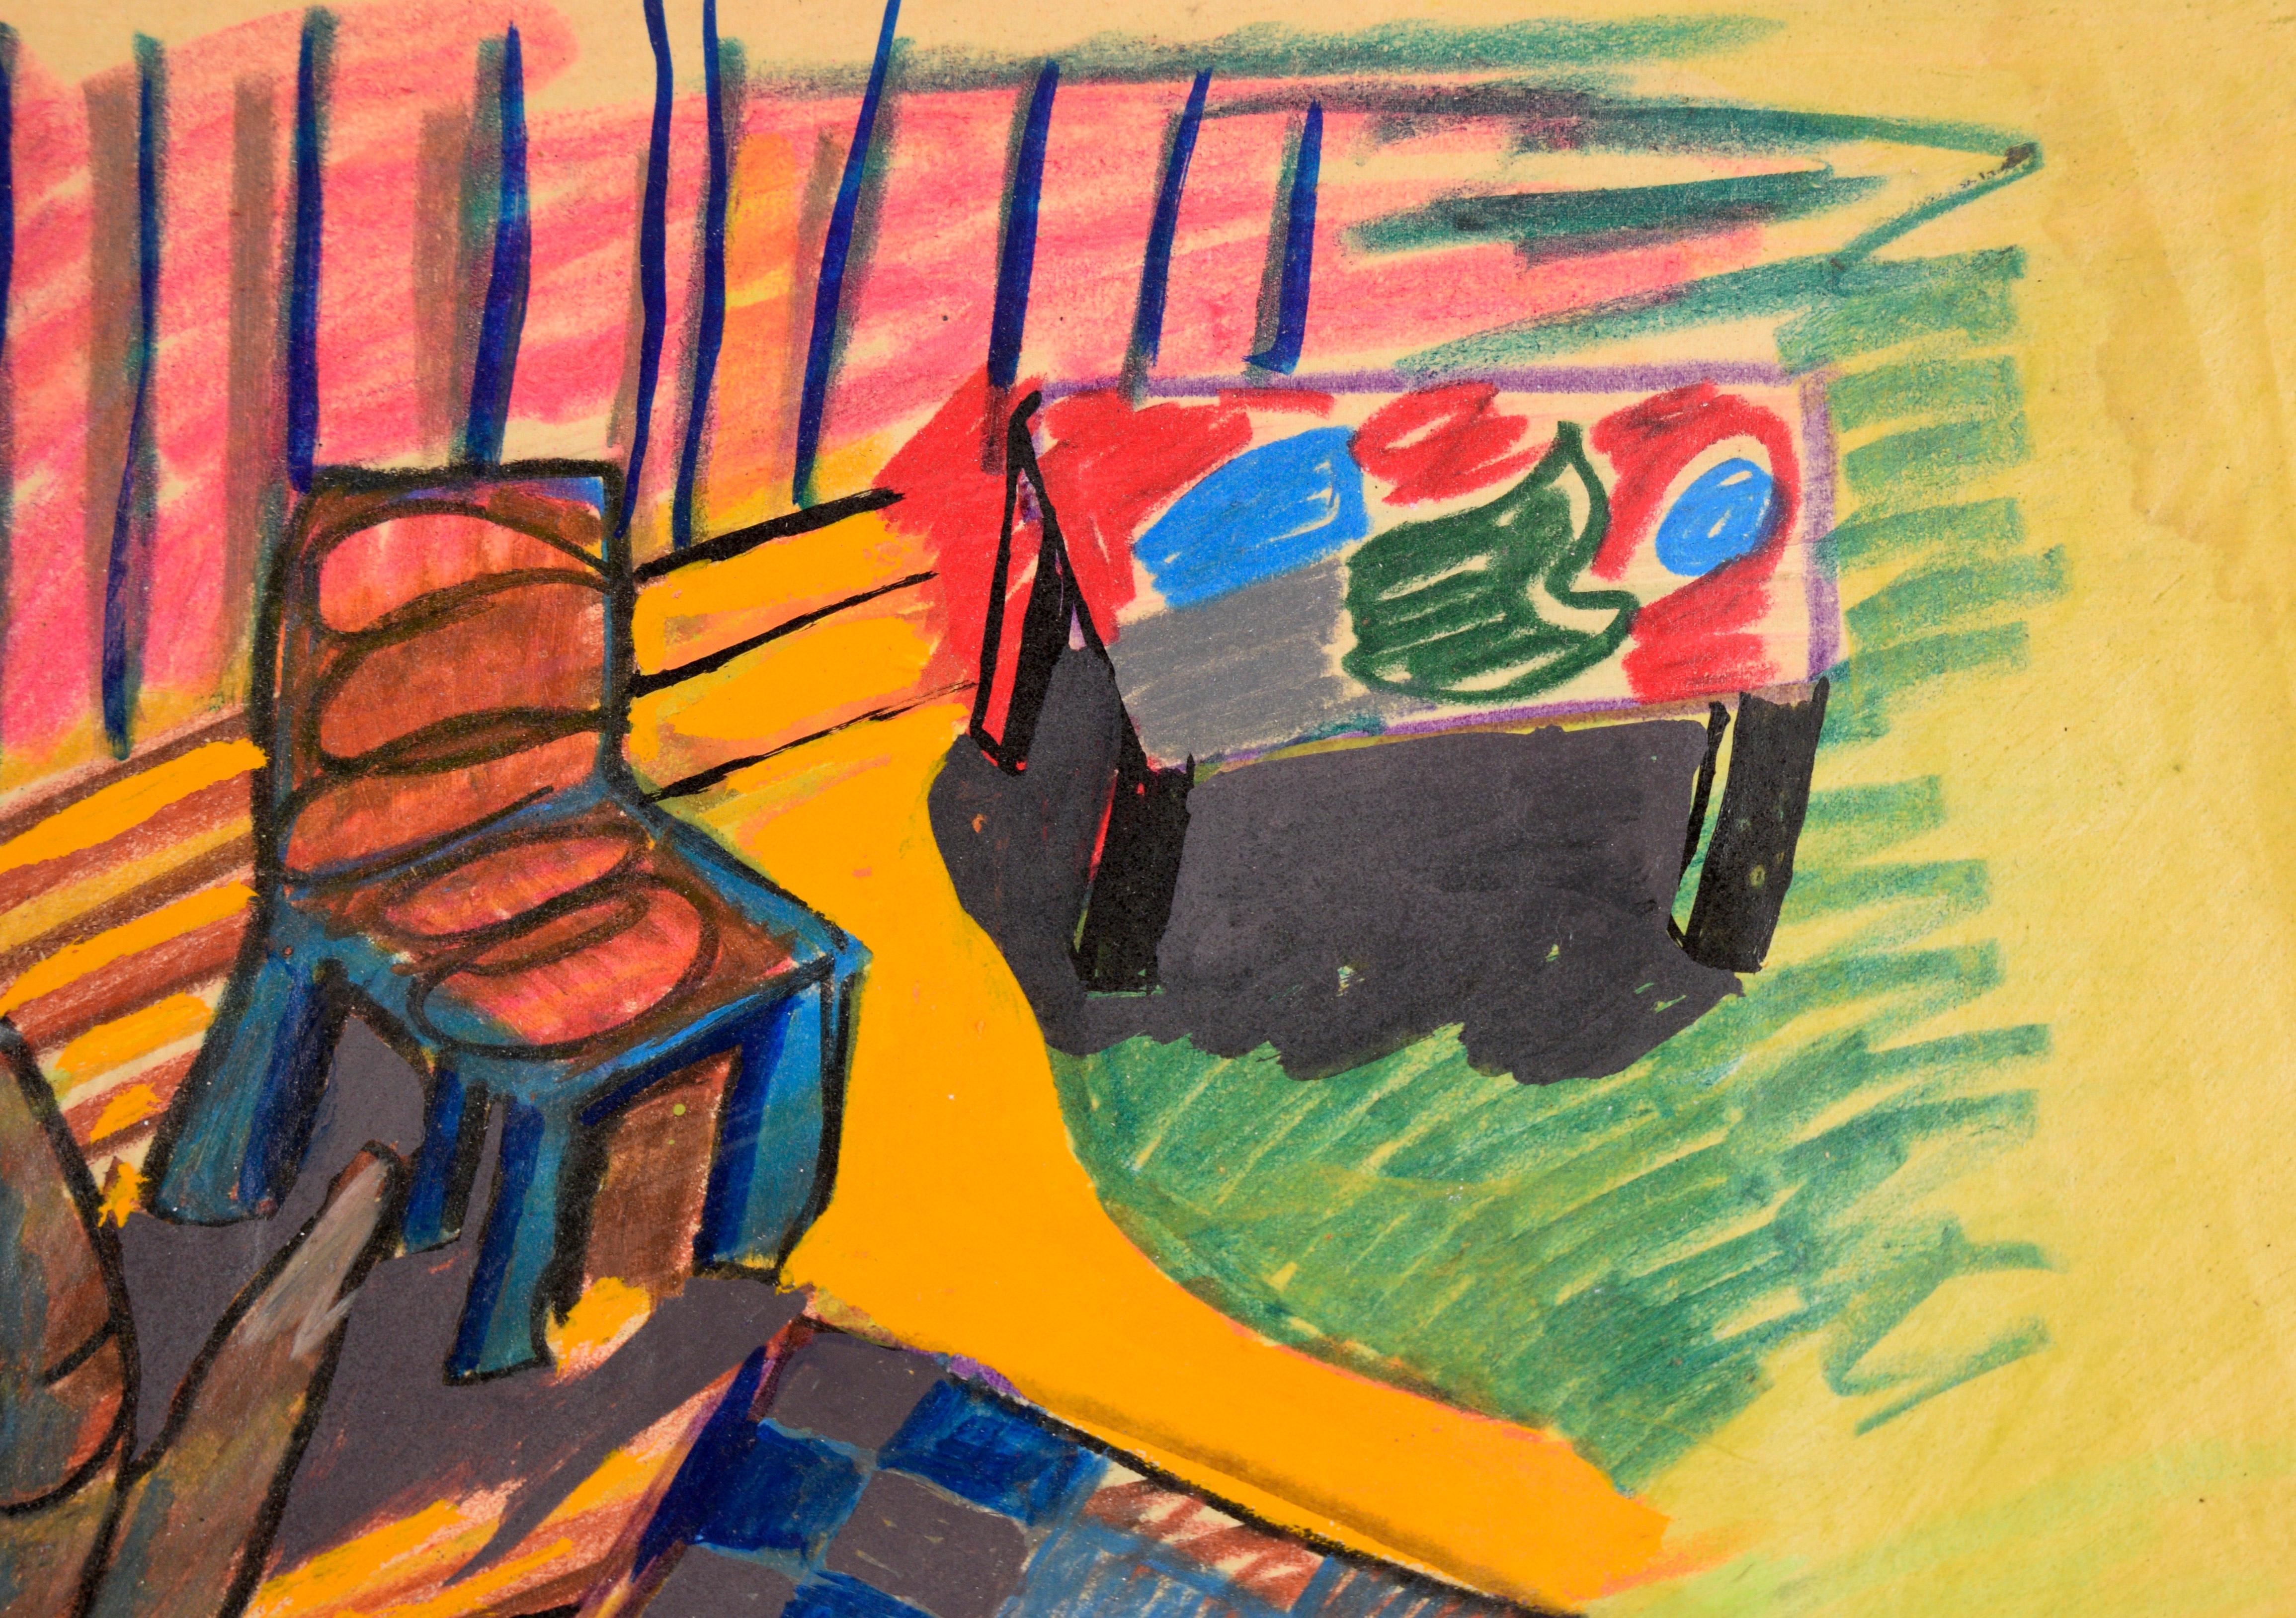 Die Regenbogenpfeife - Fauvistisches Porträt und Interieur in Pastell auf Papier

Leuchtend farbiges abstraktes Porträt von Michael William Eggleston (Amerikaner, 20. Jahrhundert). Eine blaugesichtige Figur auf der linken Seite der Komposition